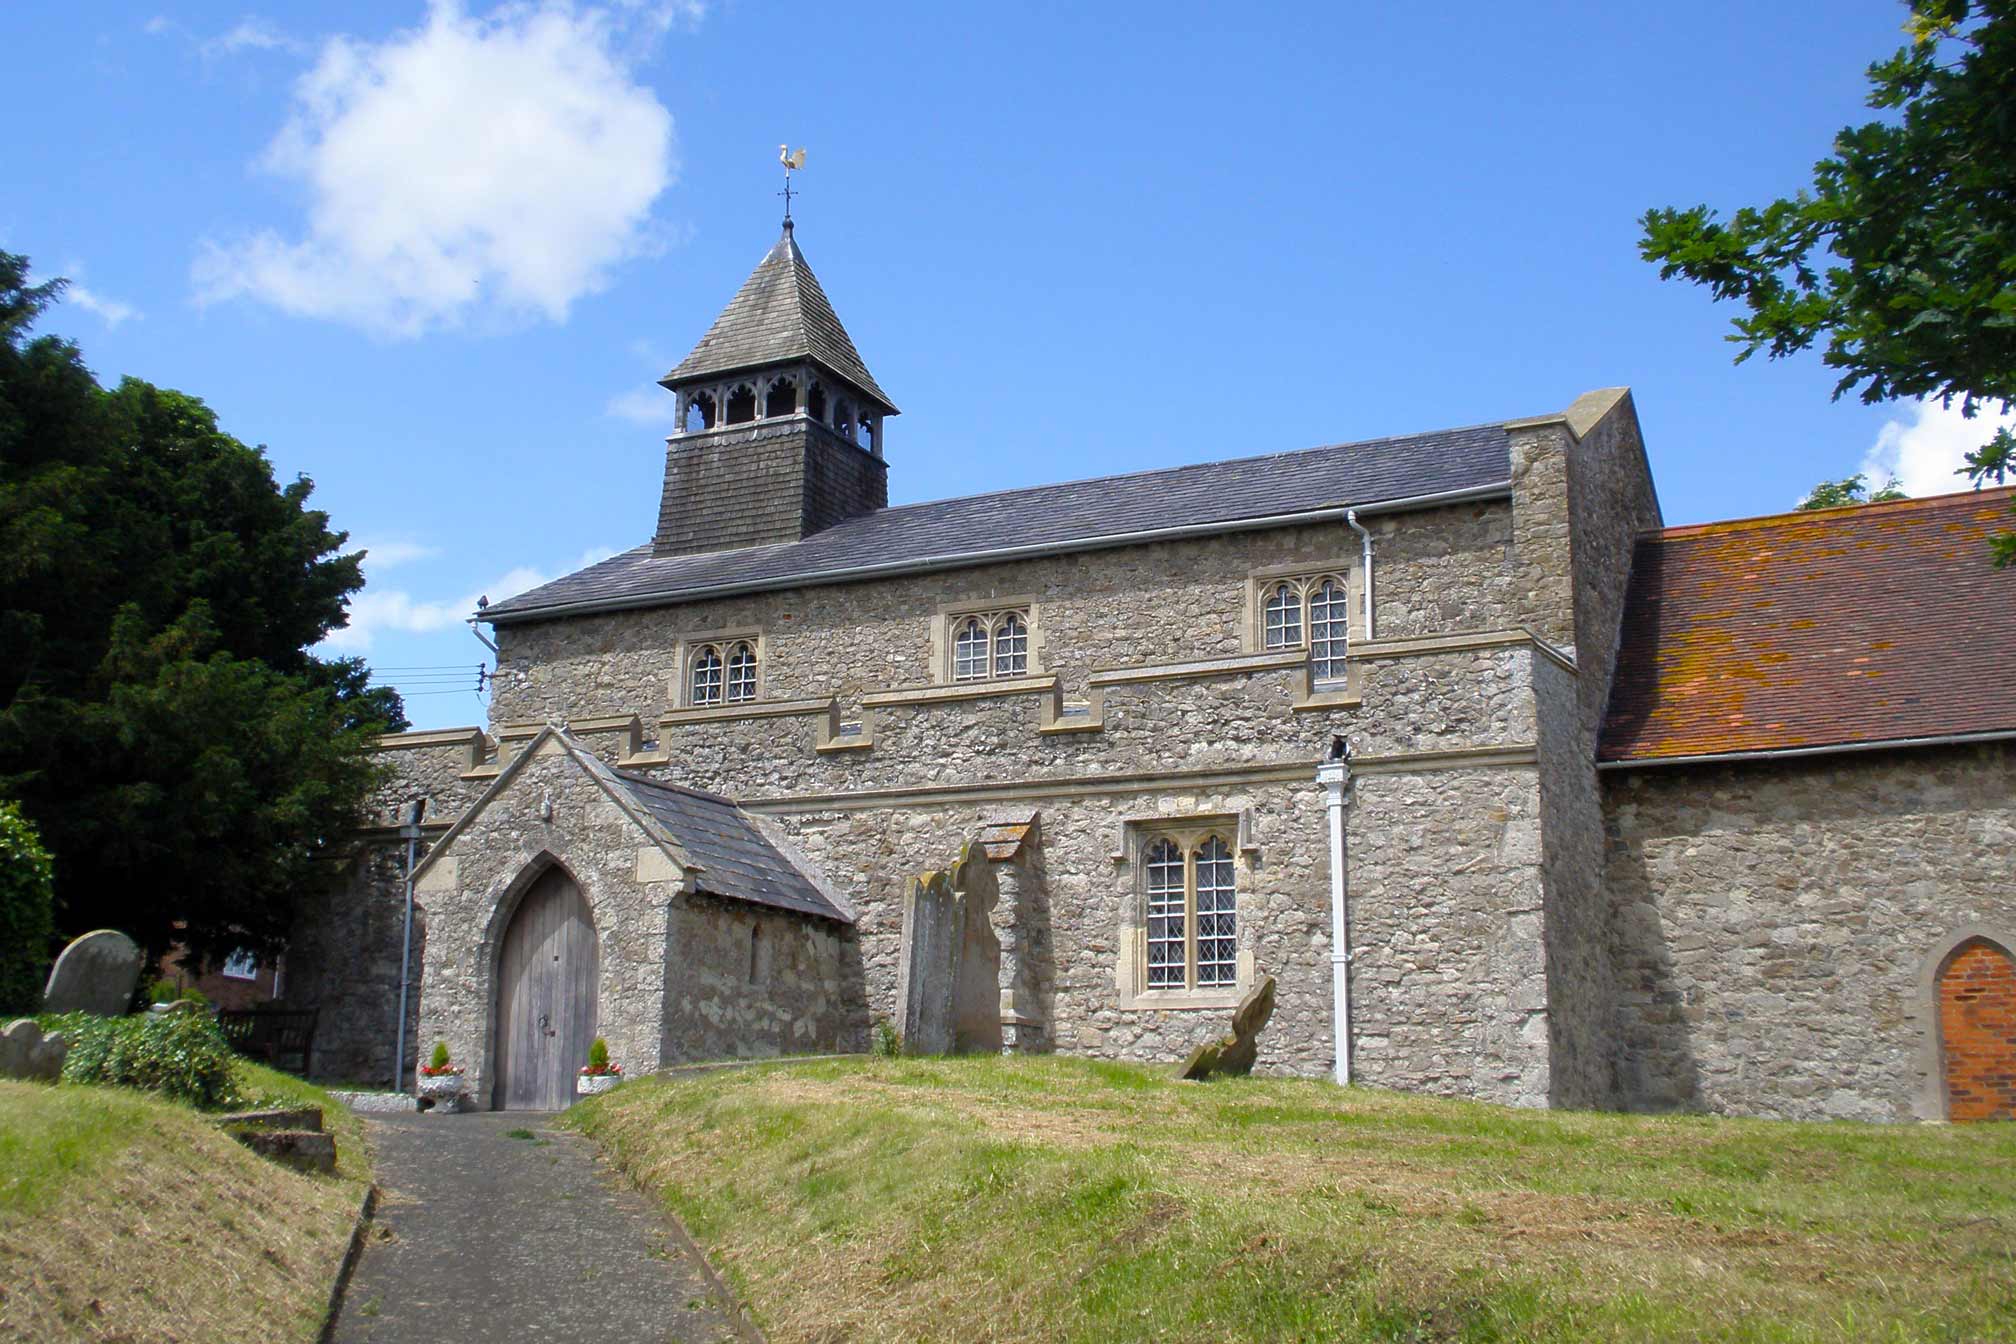 A grey stone church on a summer day